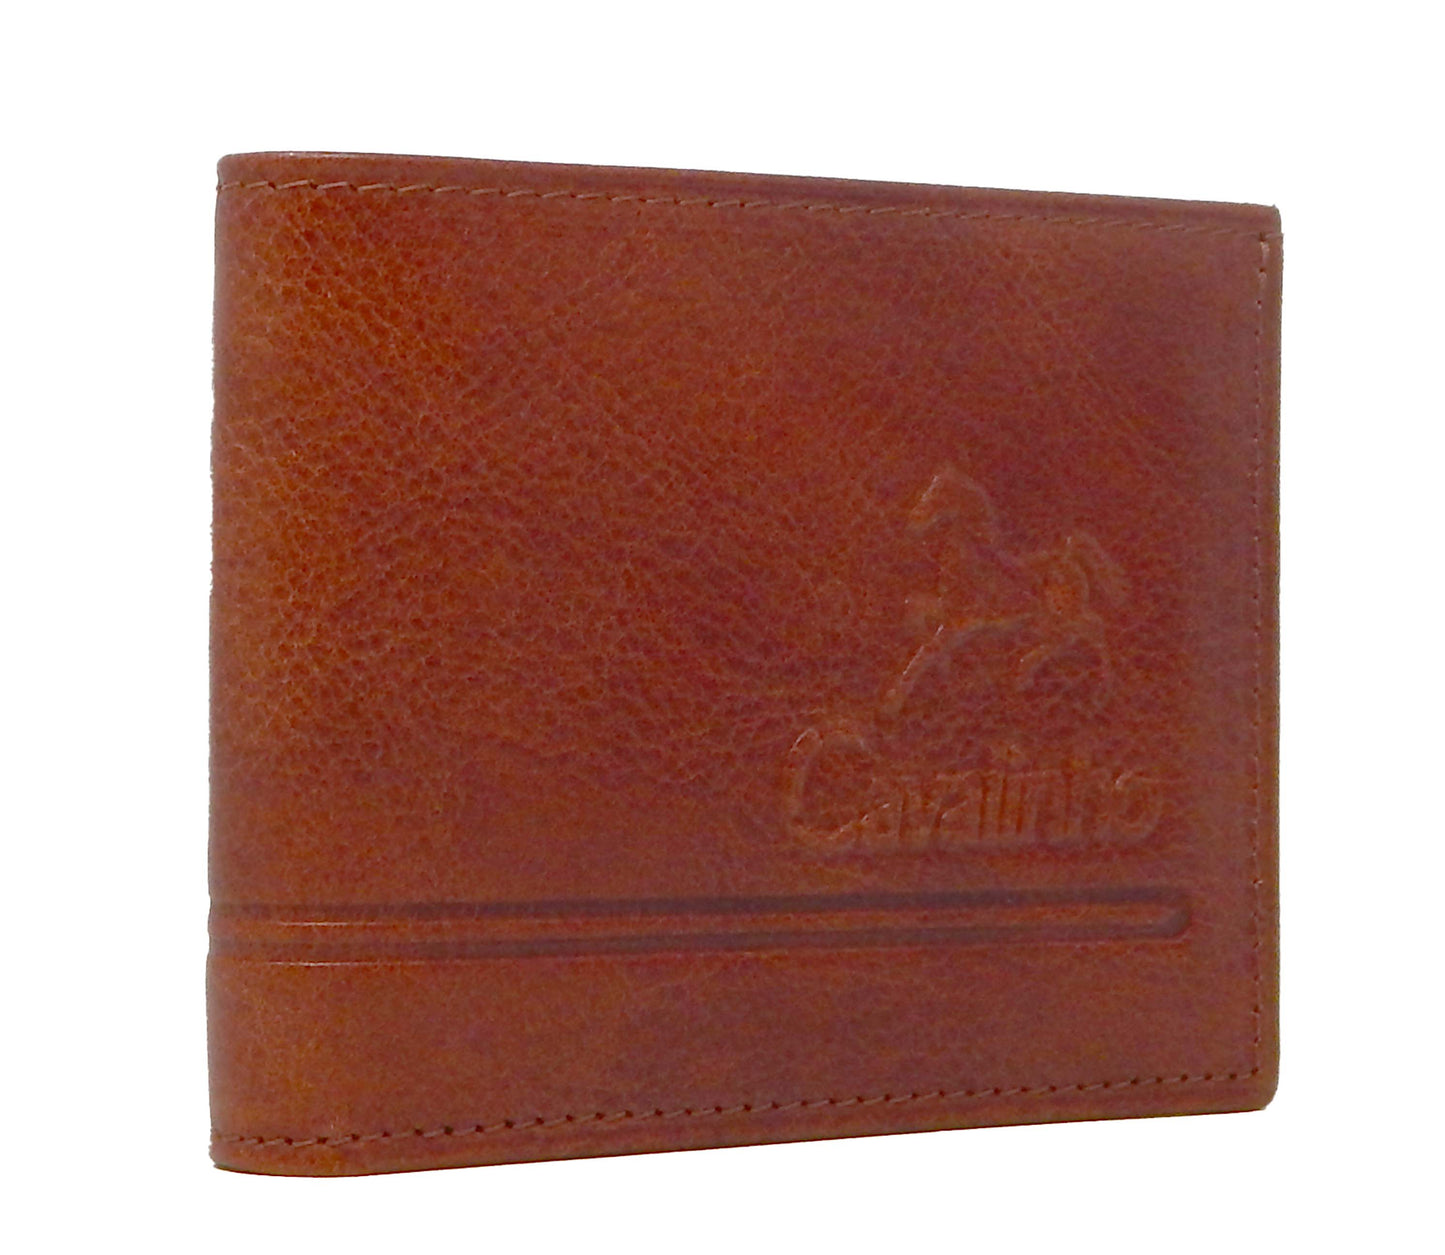 Cavalinho Men's Trifold Leather Wallet - SaddleBrown - 28610523.13.99_2